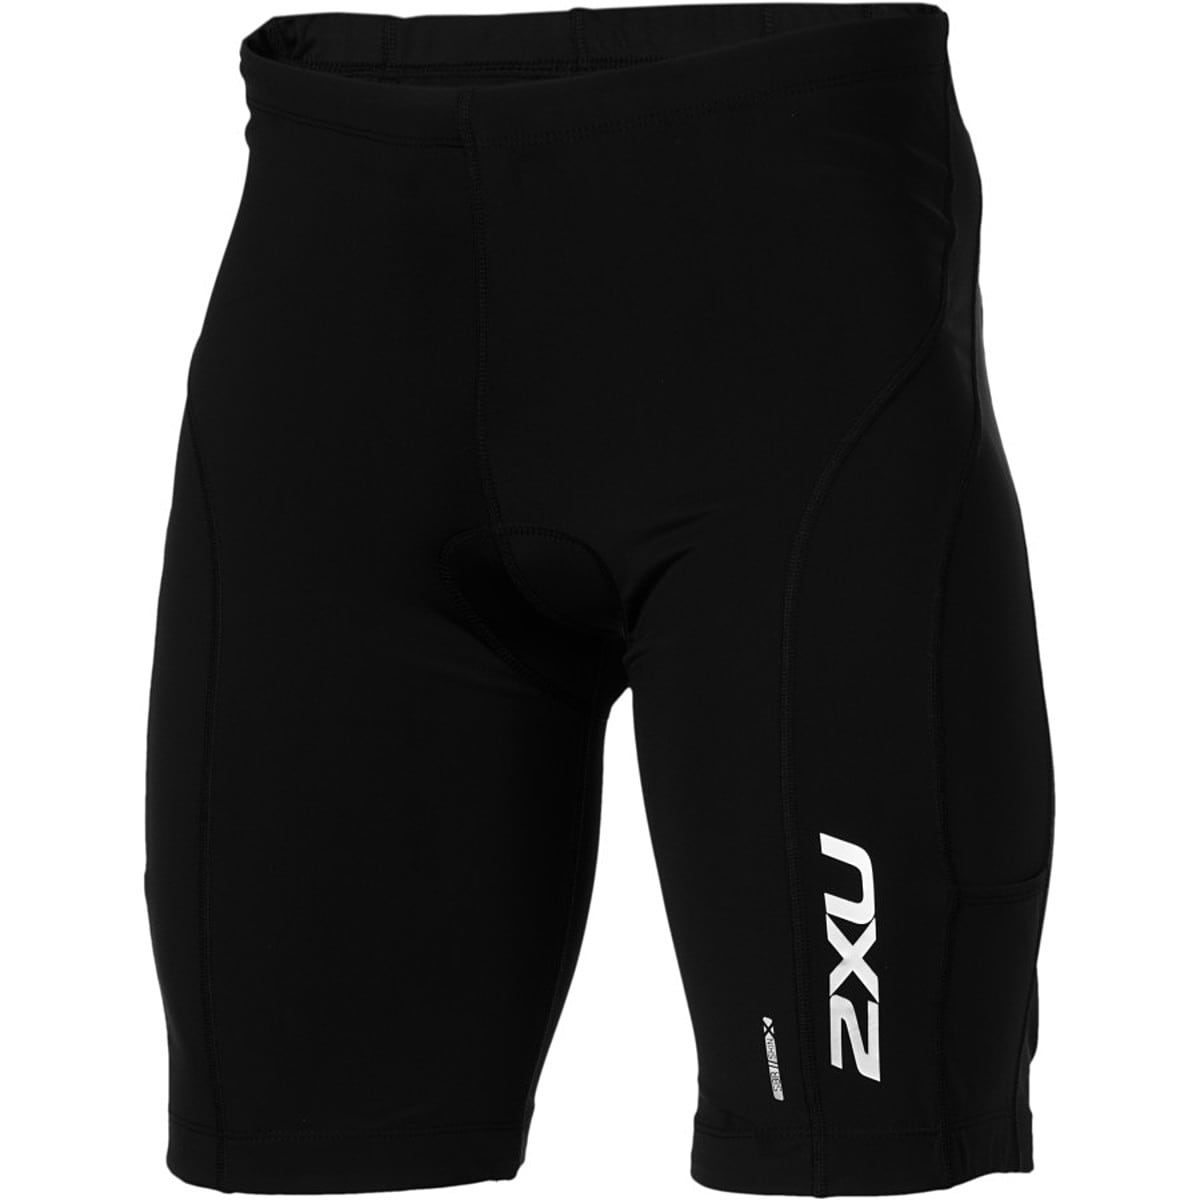 2XU Comp Men's Tri Shorts - Men